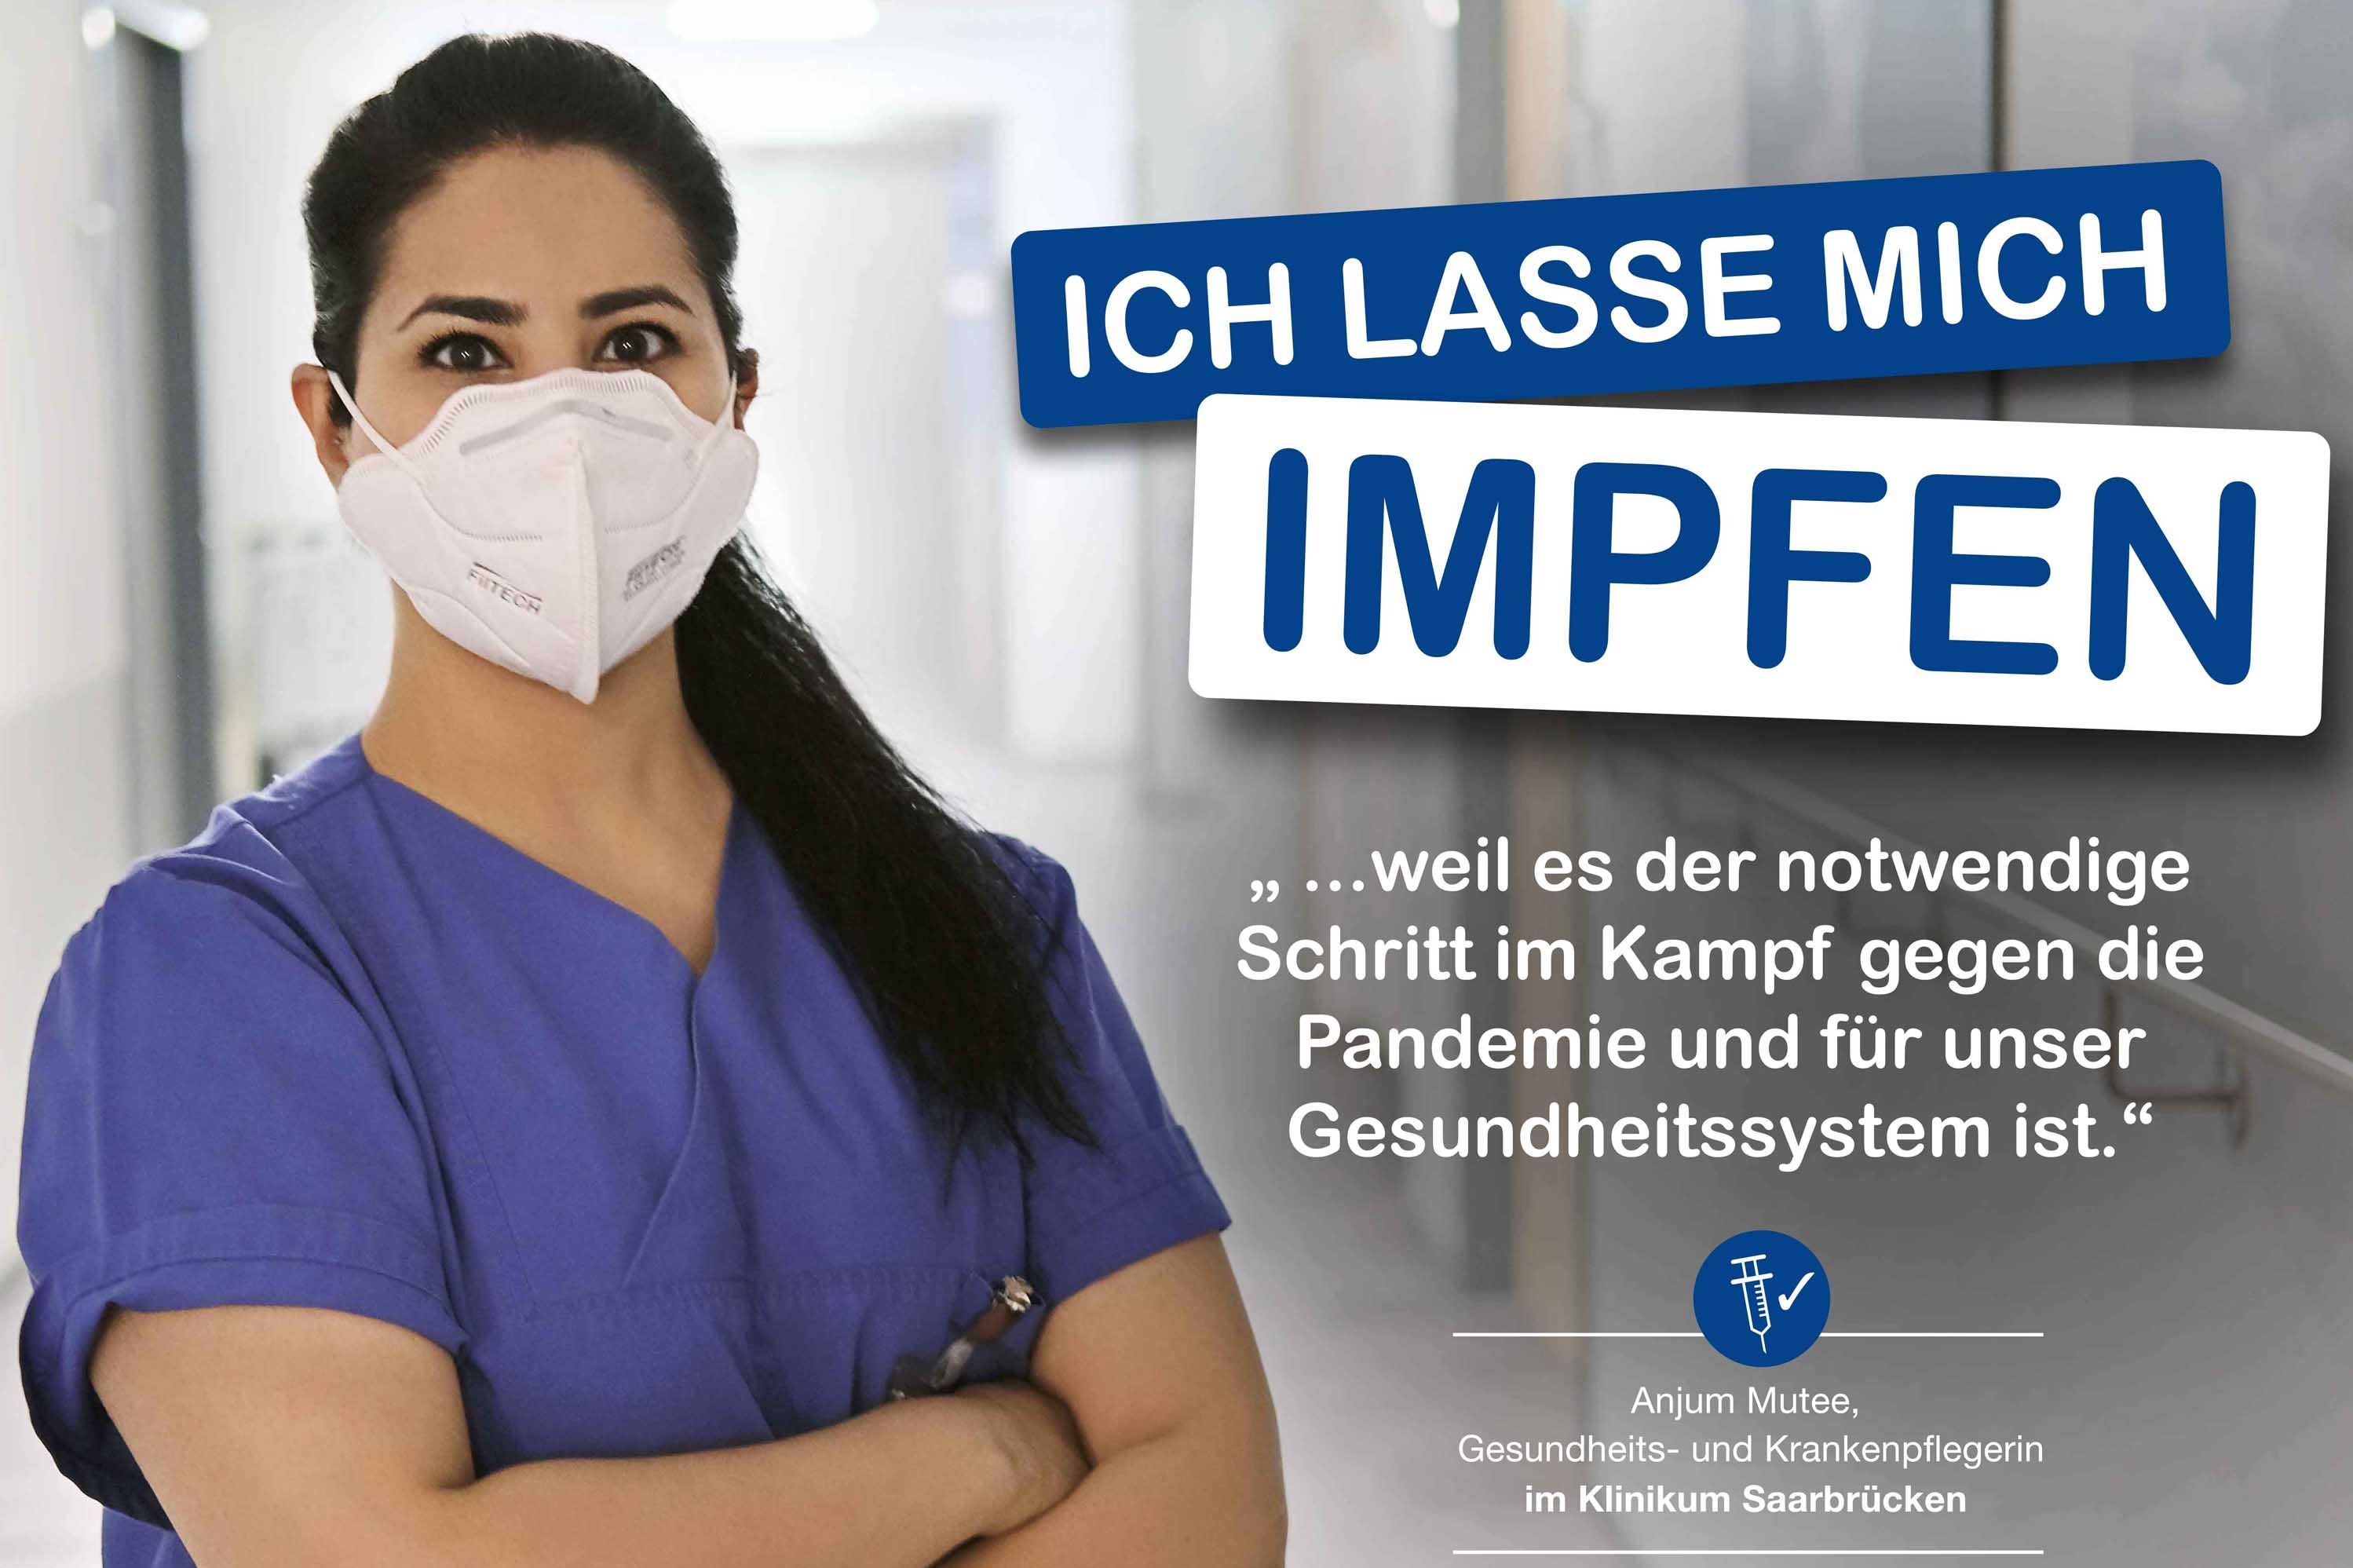 Impfkampagne Klinikum Saarbrücken: Anjum Mutee, Gesundheits- und Krankenpflegerin